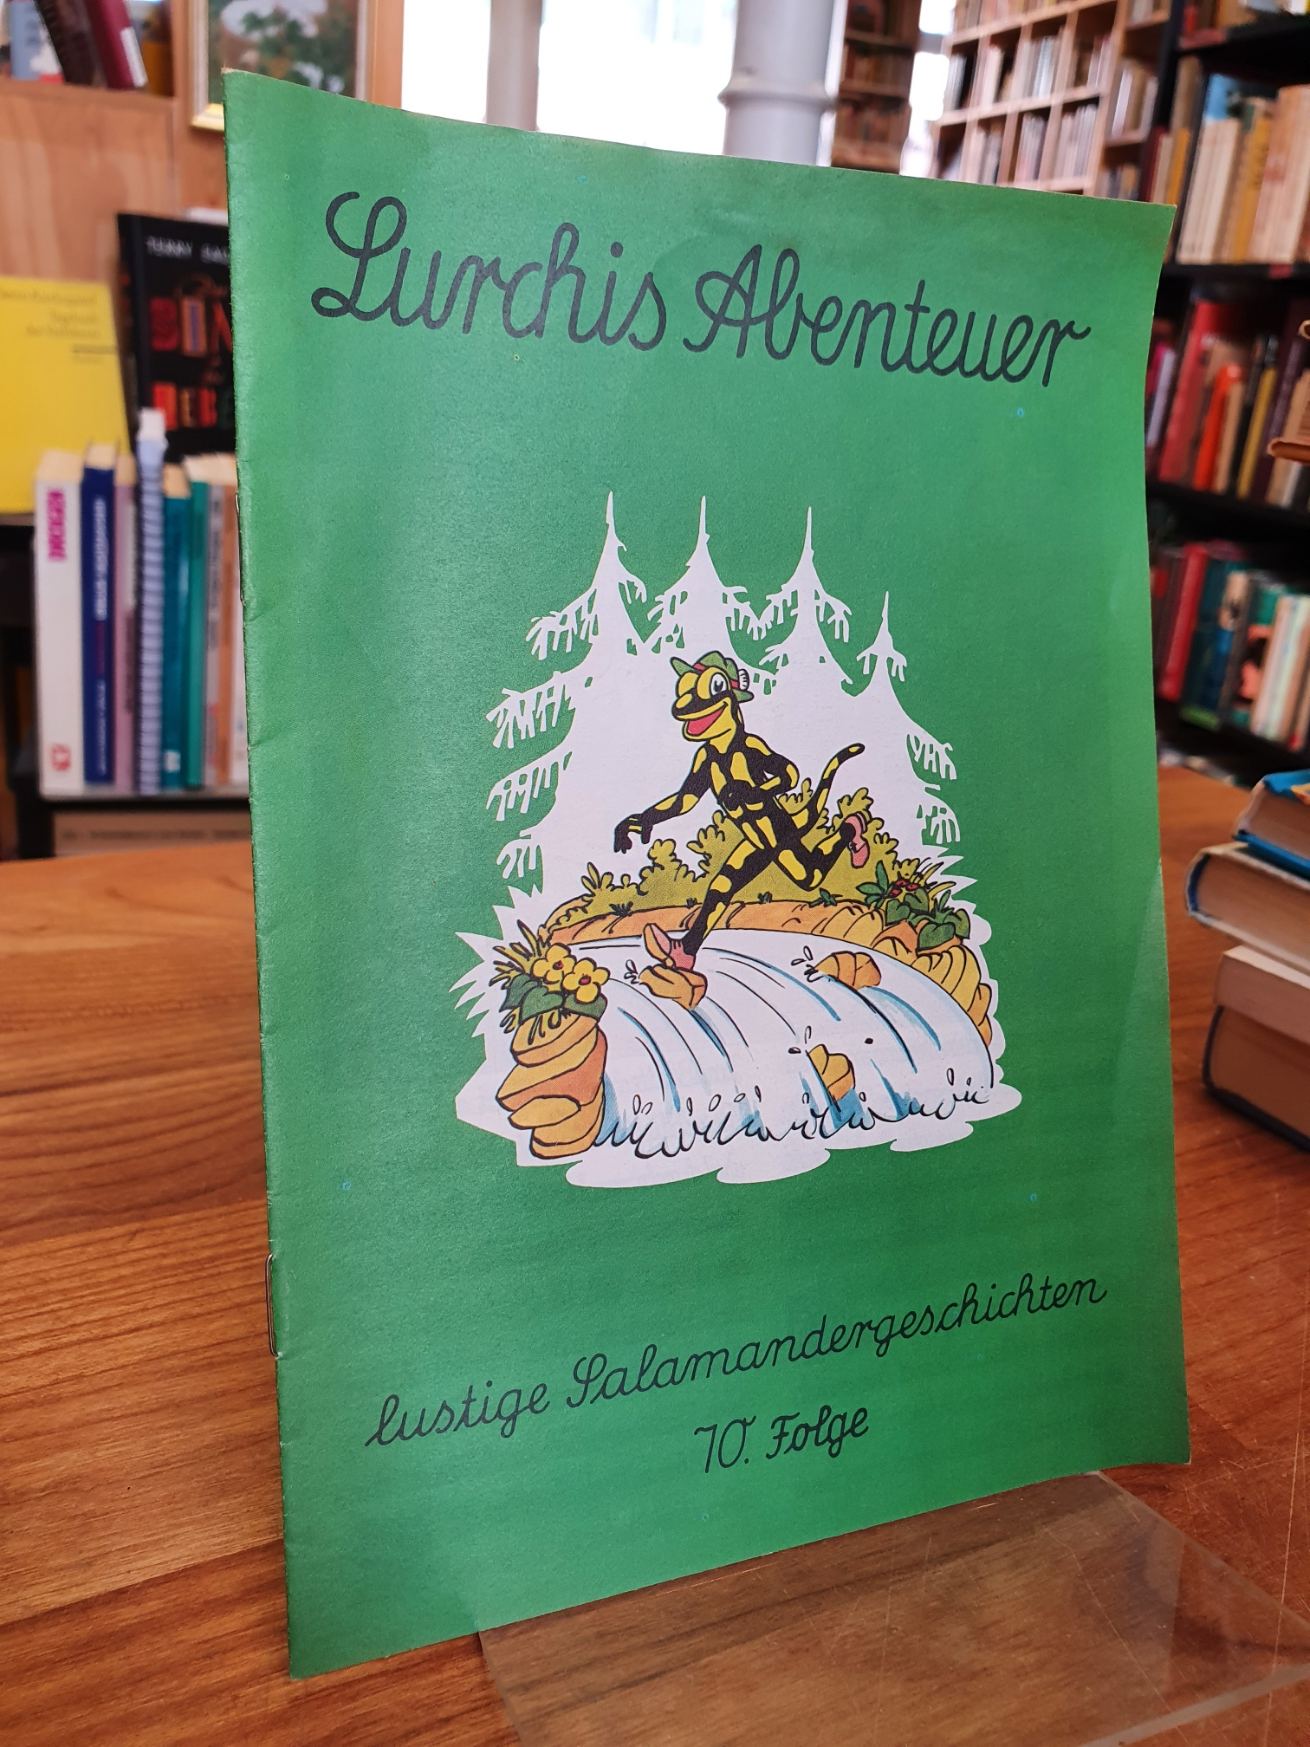 Salamander AG (Hrsg.), Lurchis Abenteuer – Llustige Salamandergeschichten, 10. F